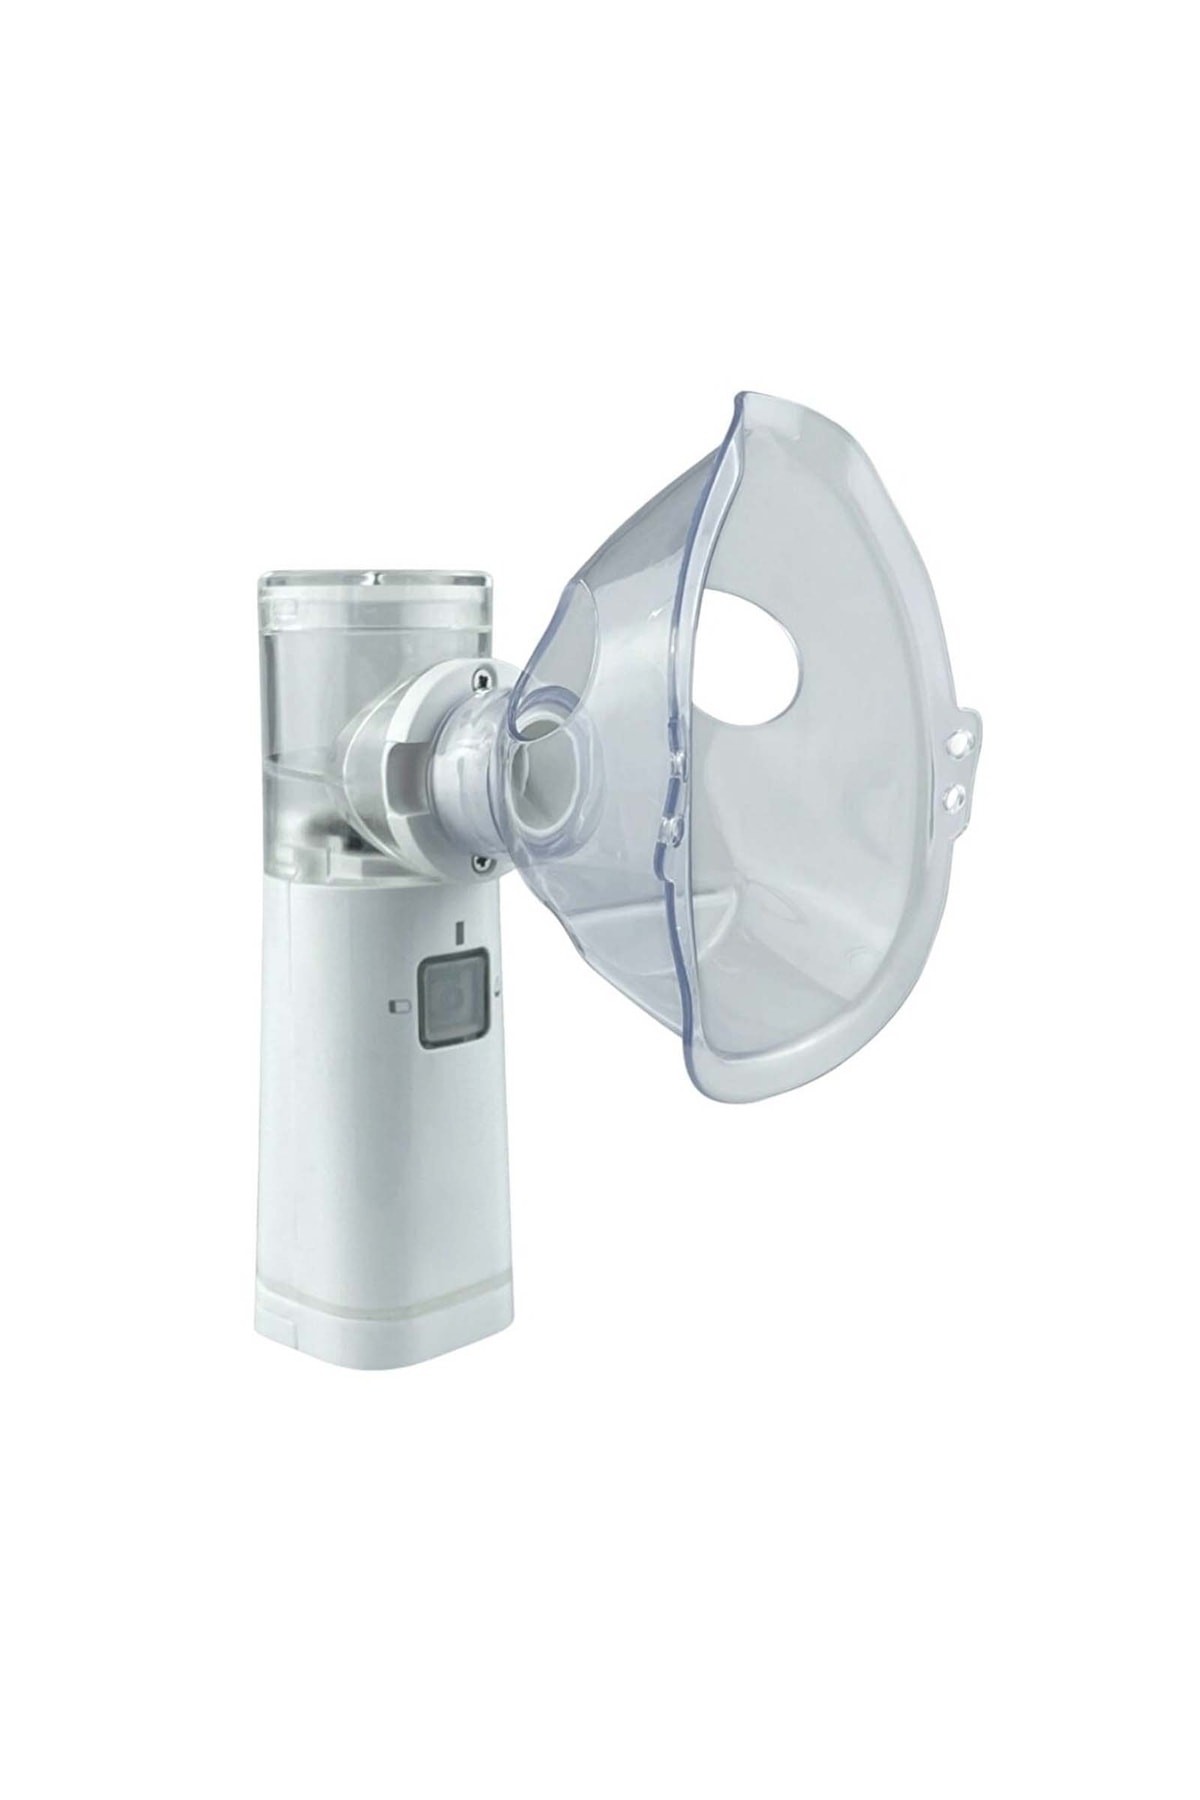 Taşınabilir Mesh Nebulizatör, Respirox Nebulizatör, El Tipi Nebulizatör, Sessiz Nebulizatör,